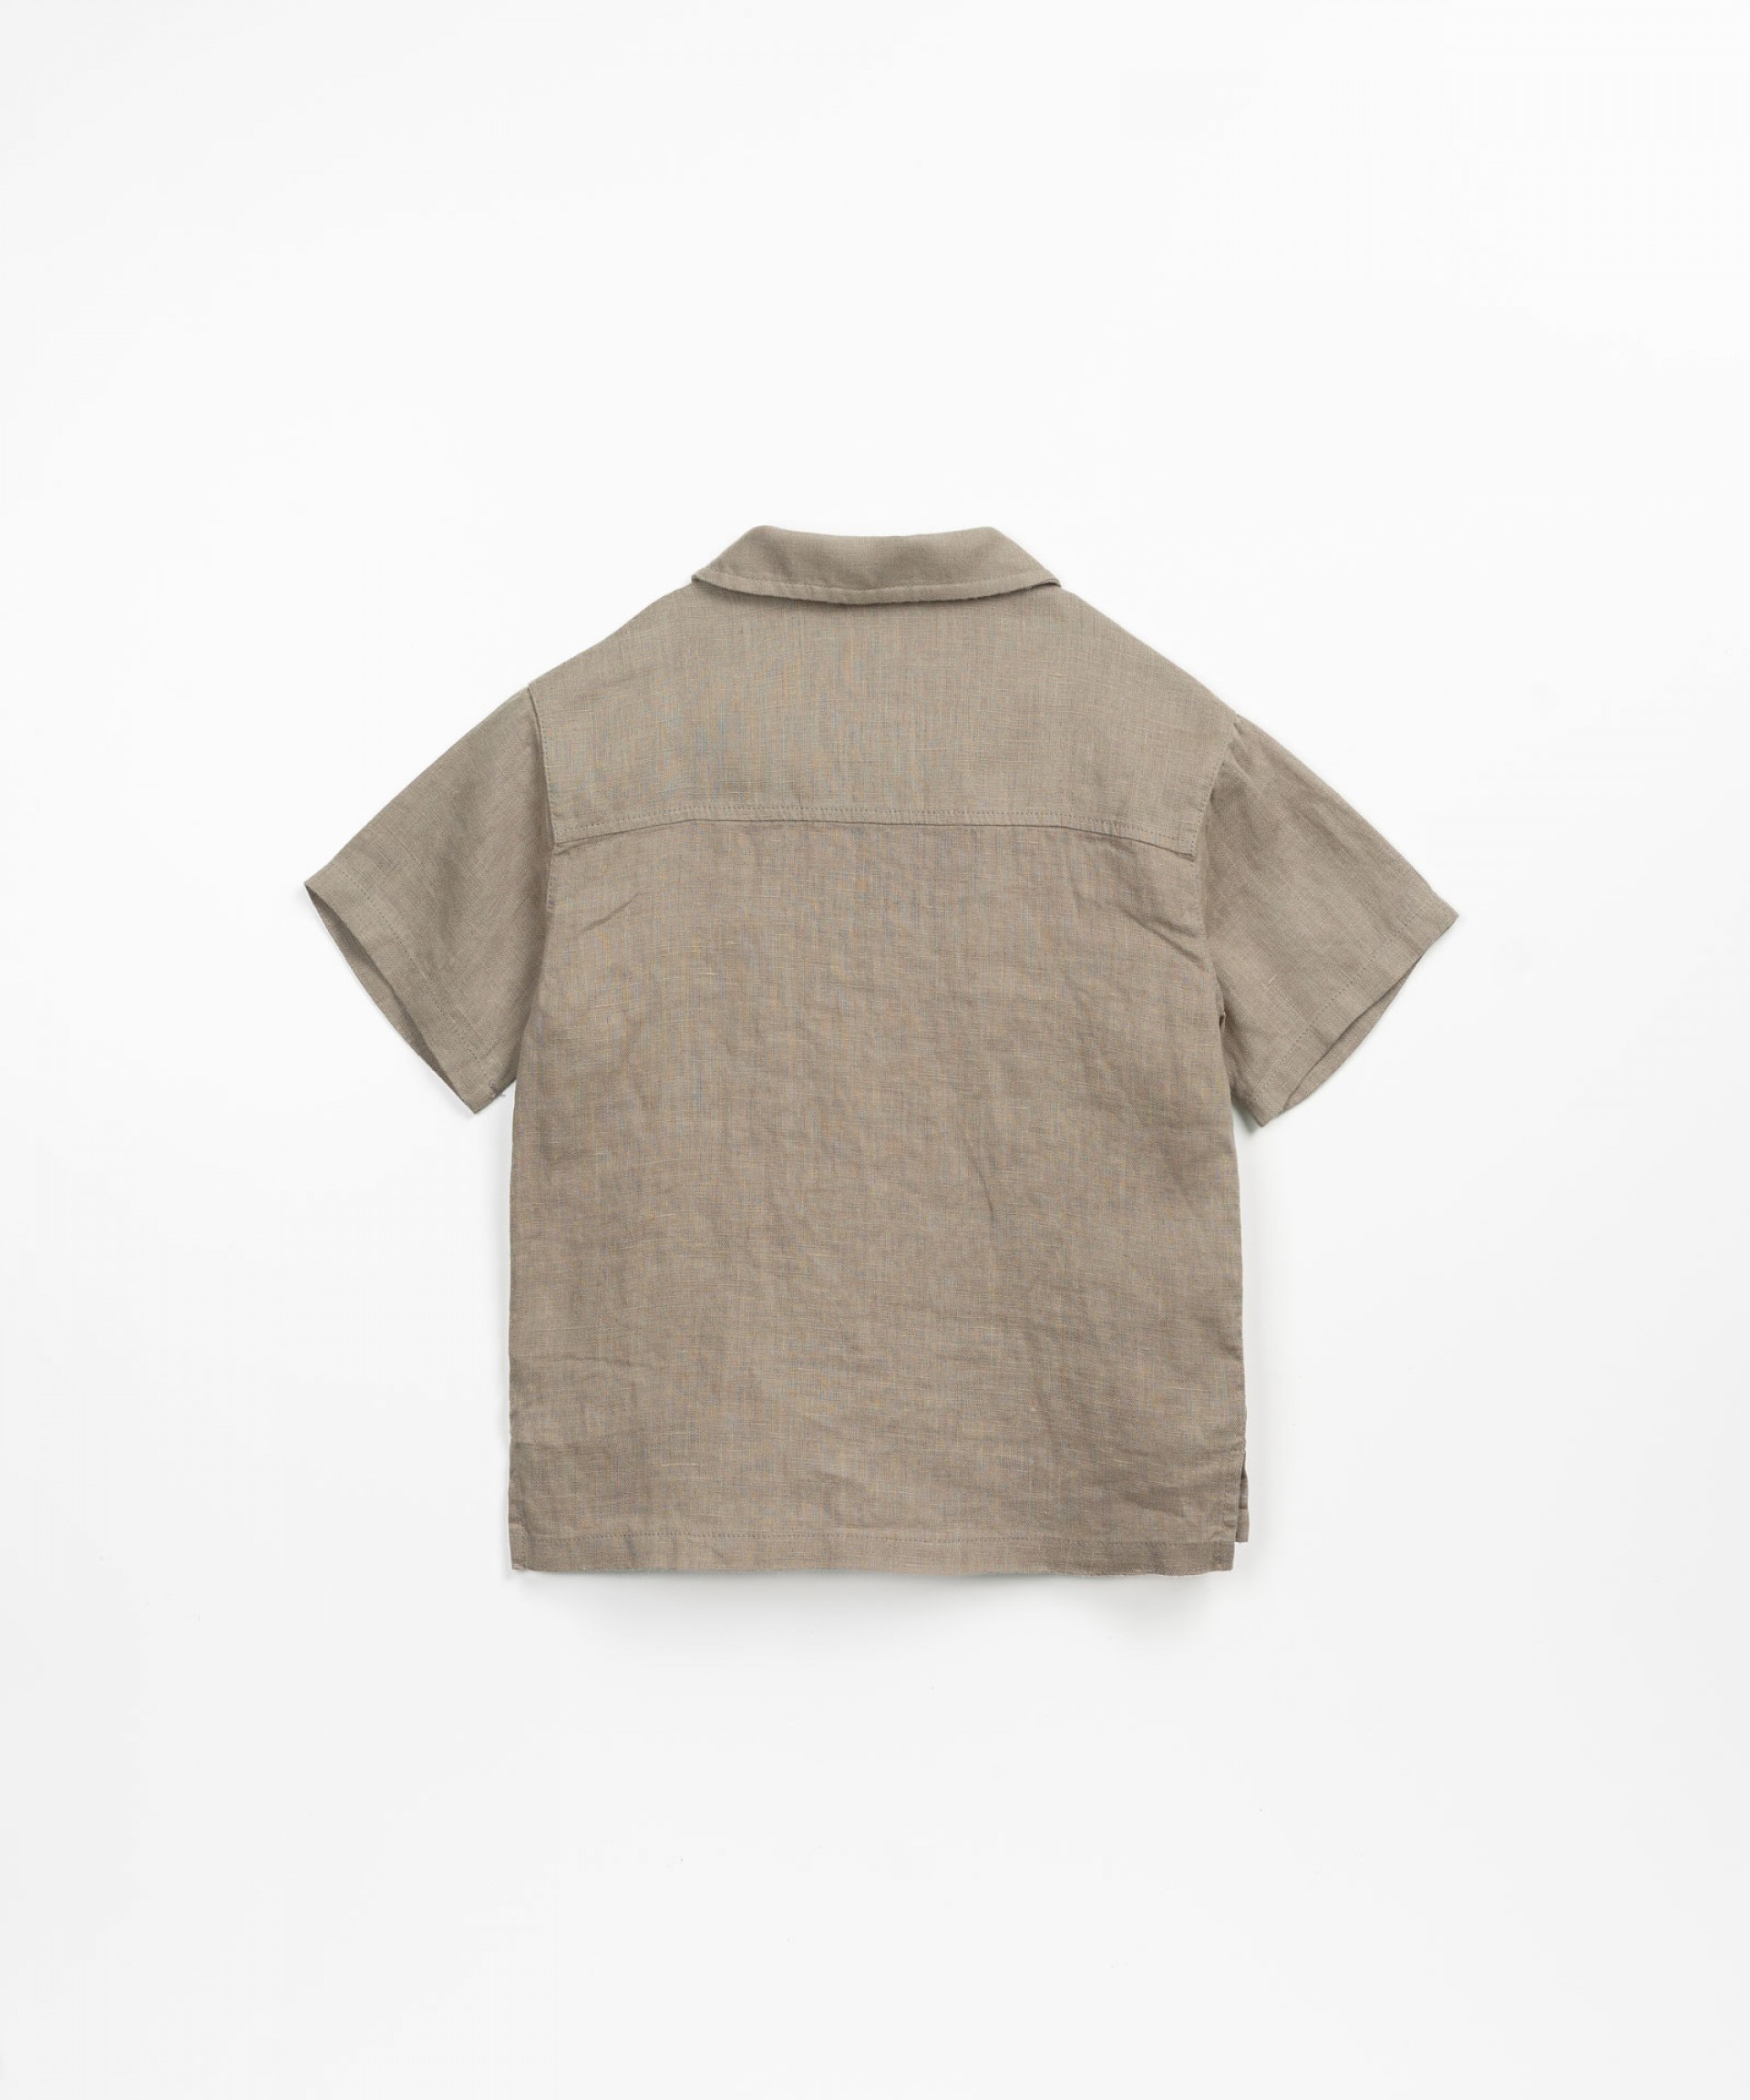 Camisa de linho com bolsos | Textile Art